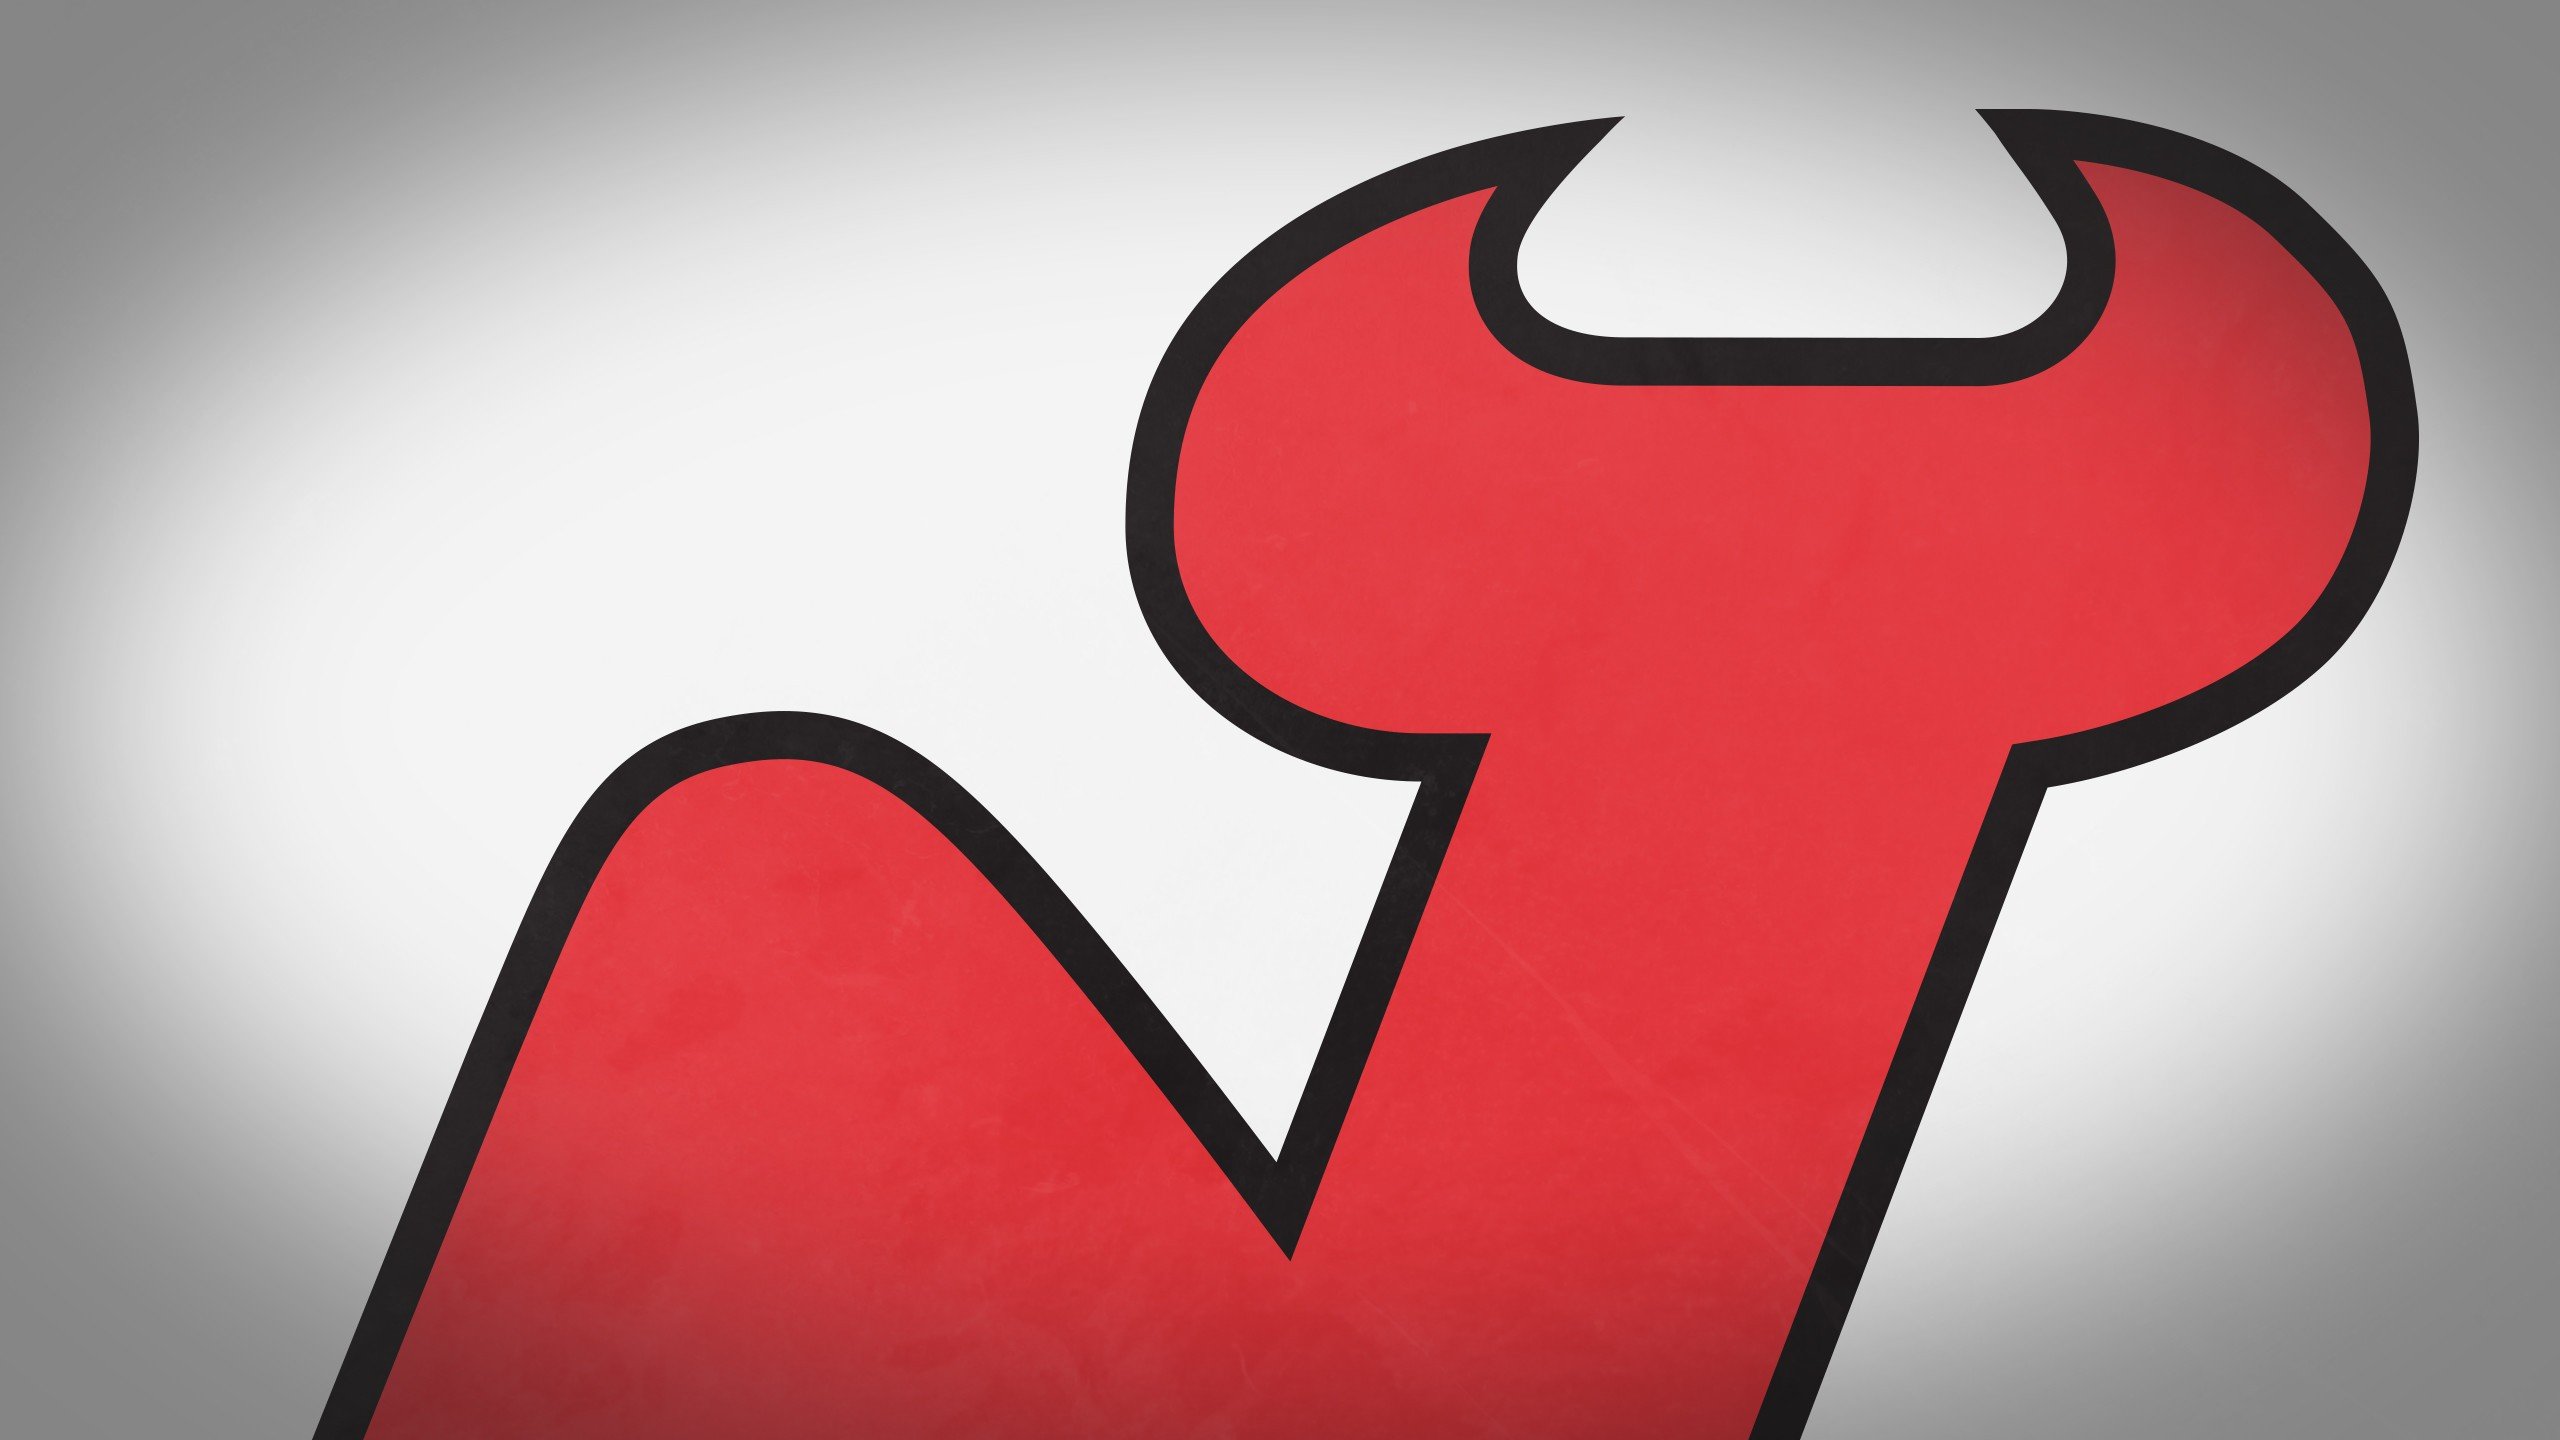 Best New Jersey Devils Wallpaper Id - New Jersey Devils Logo Png , HD Wallpaper & Backgrounds